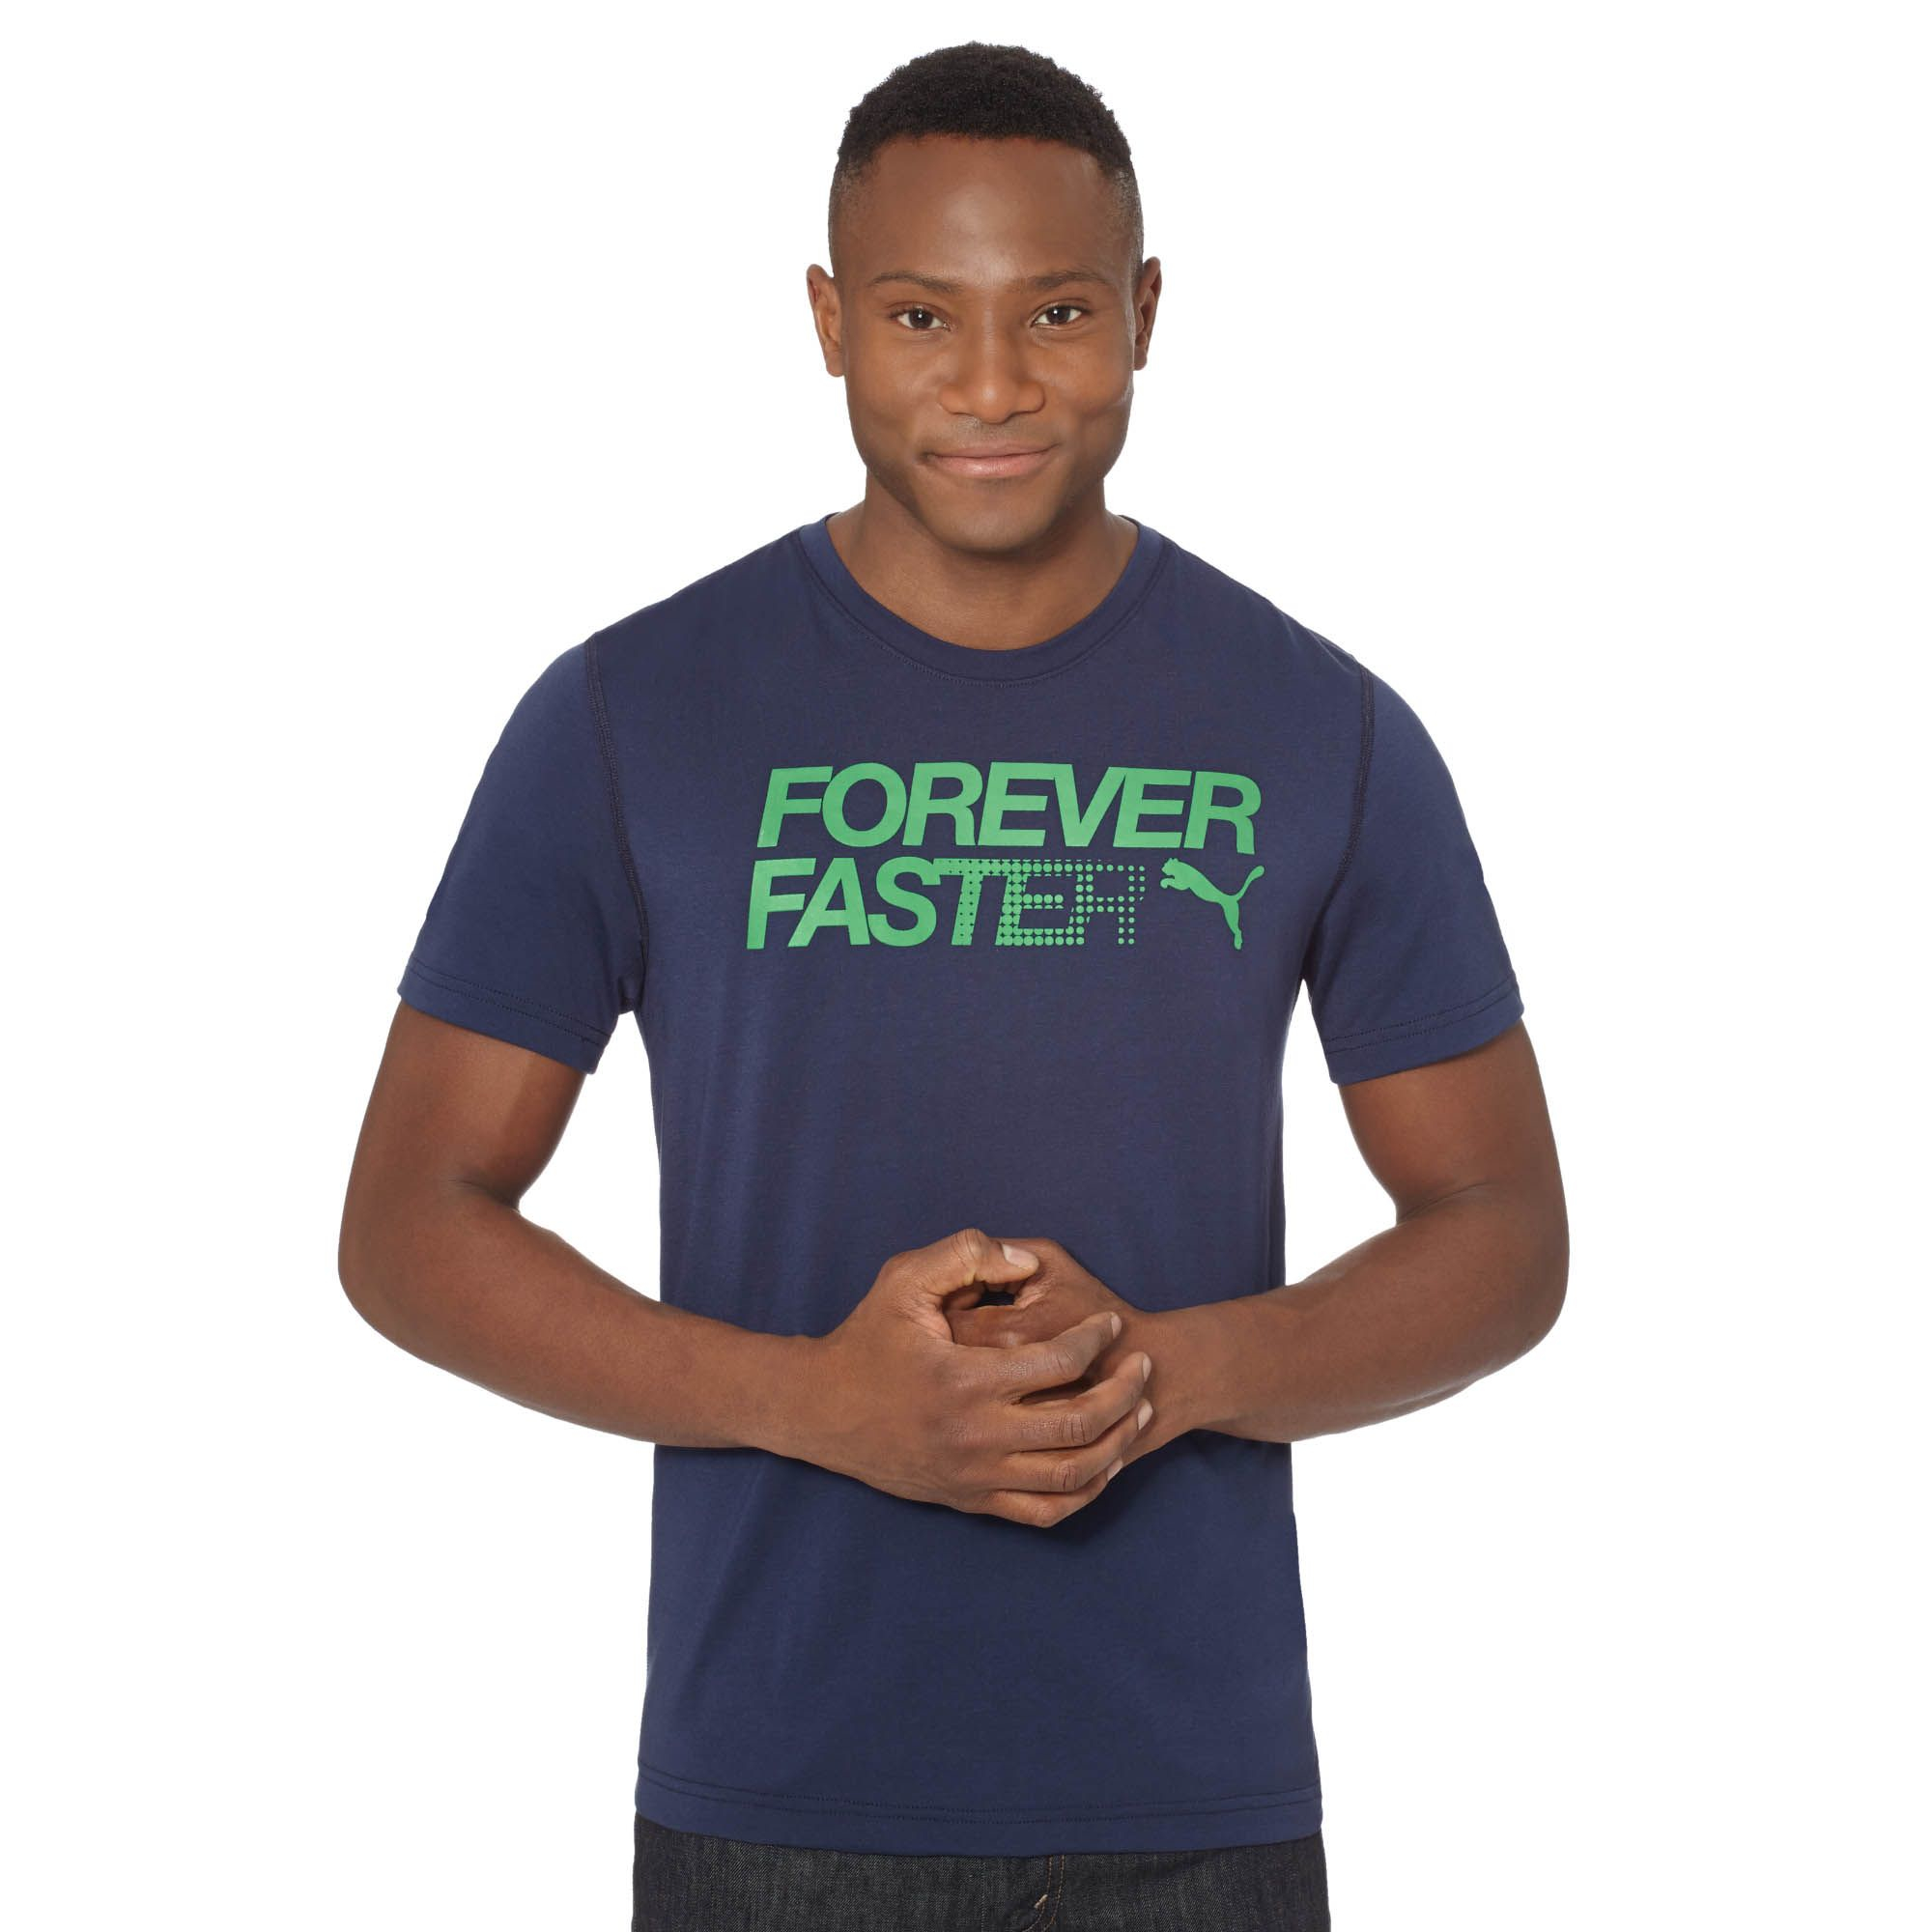 puma forever faster t shirt Off 55% - sirinscrochet.com